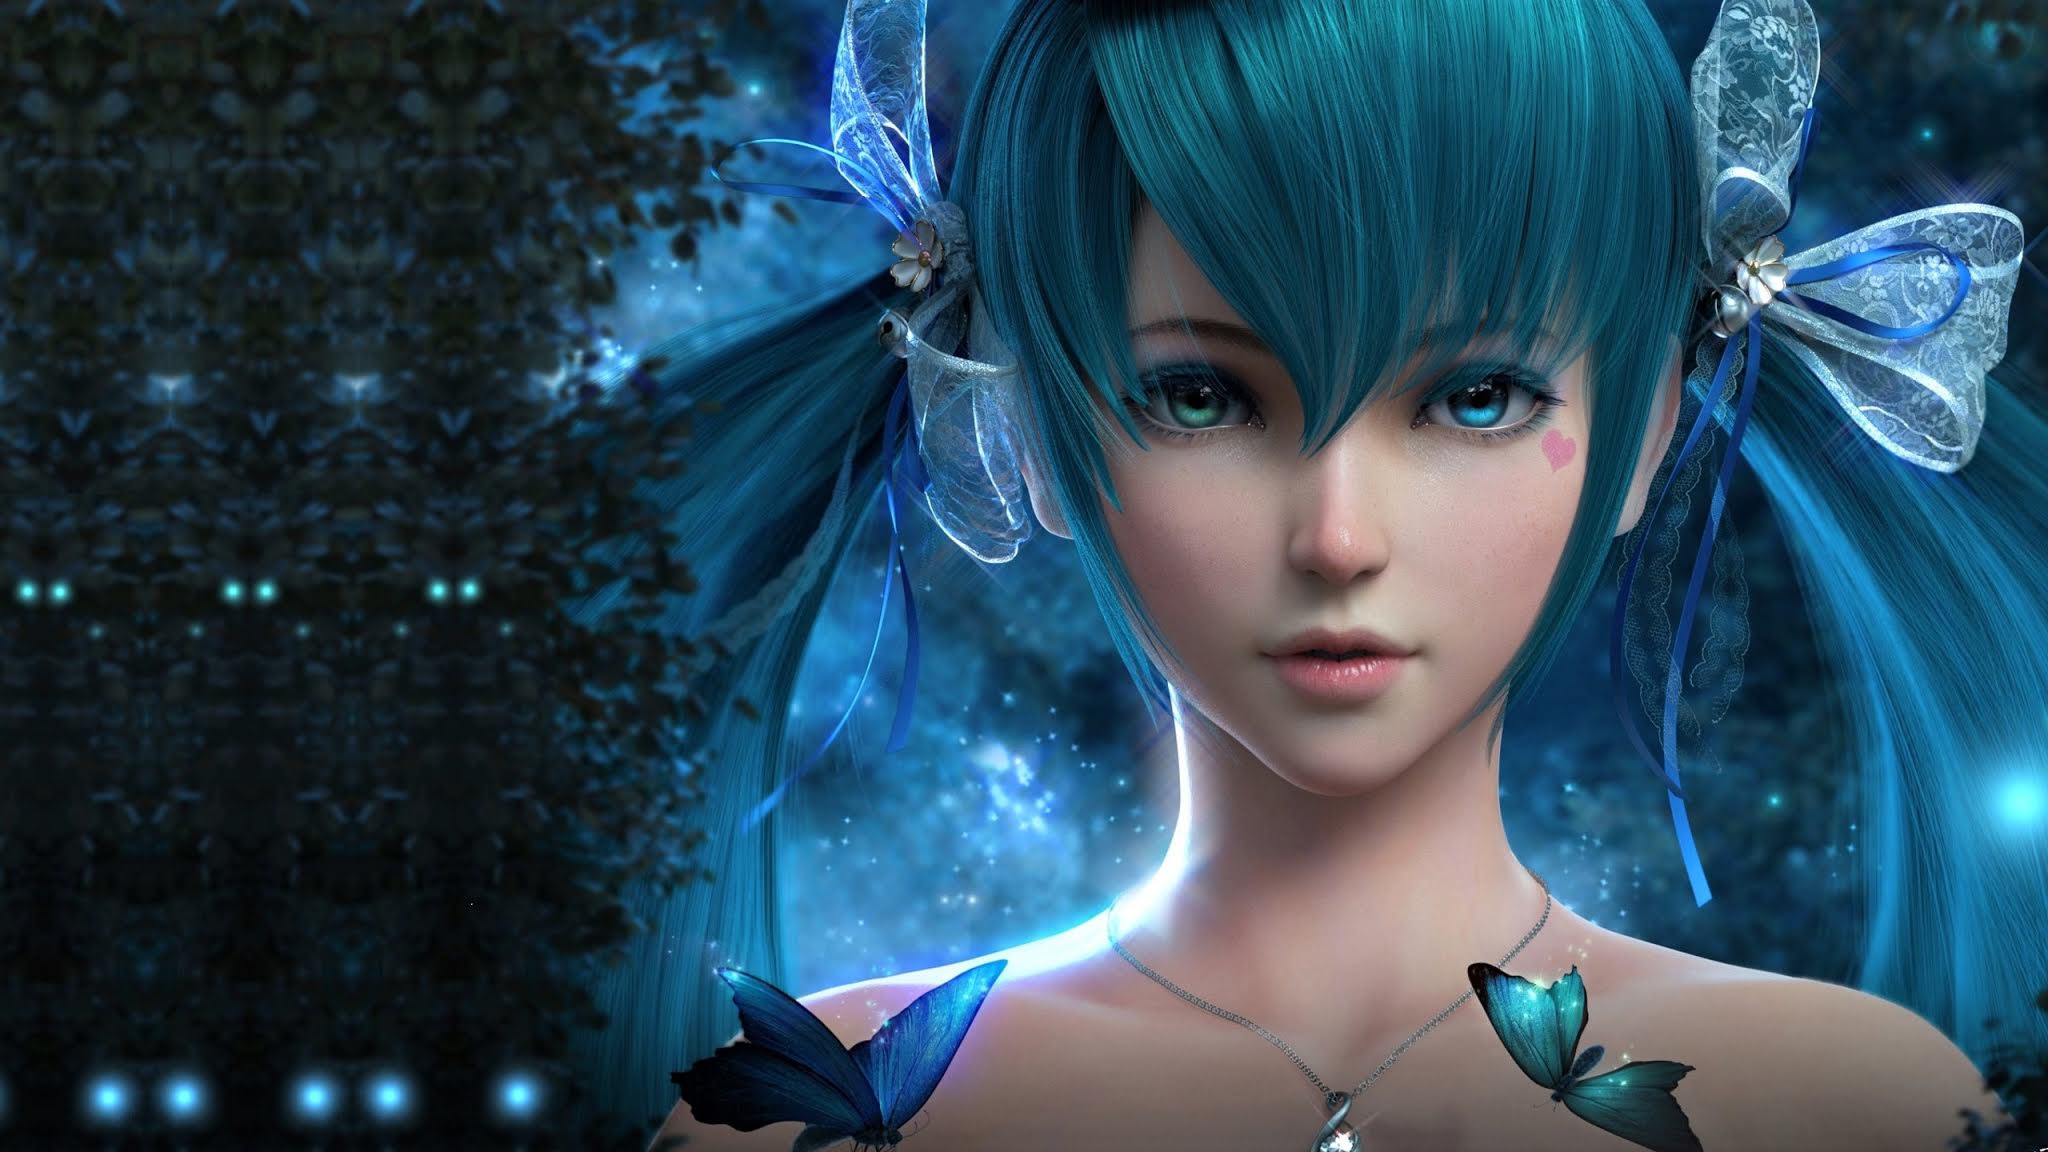 Blue-haired Fairy Anime Fan Art - wide 4